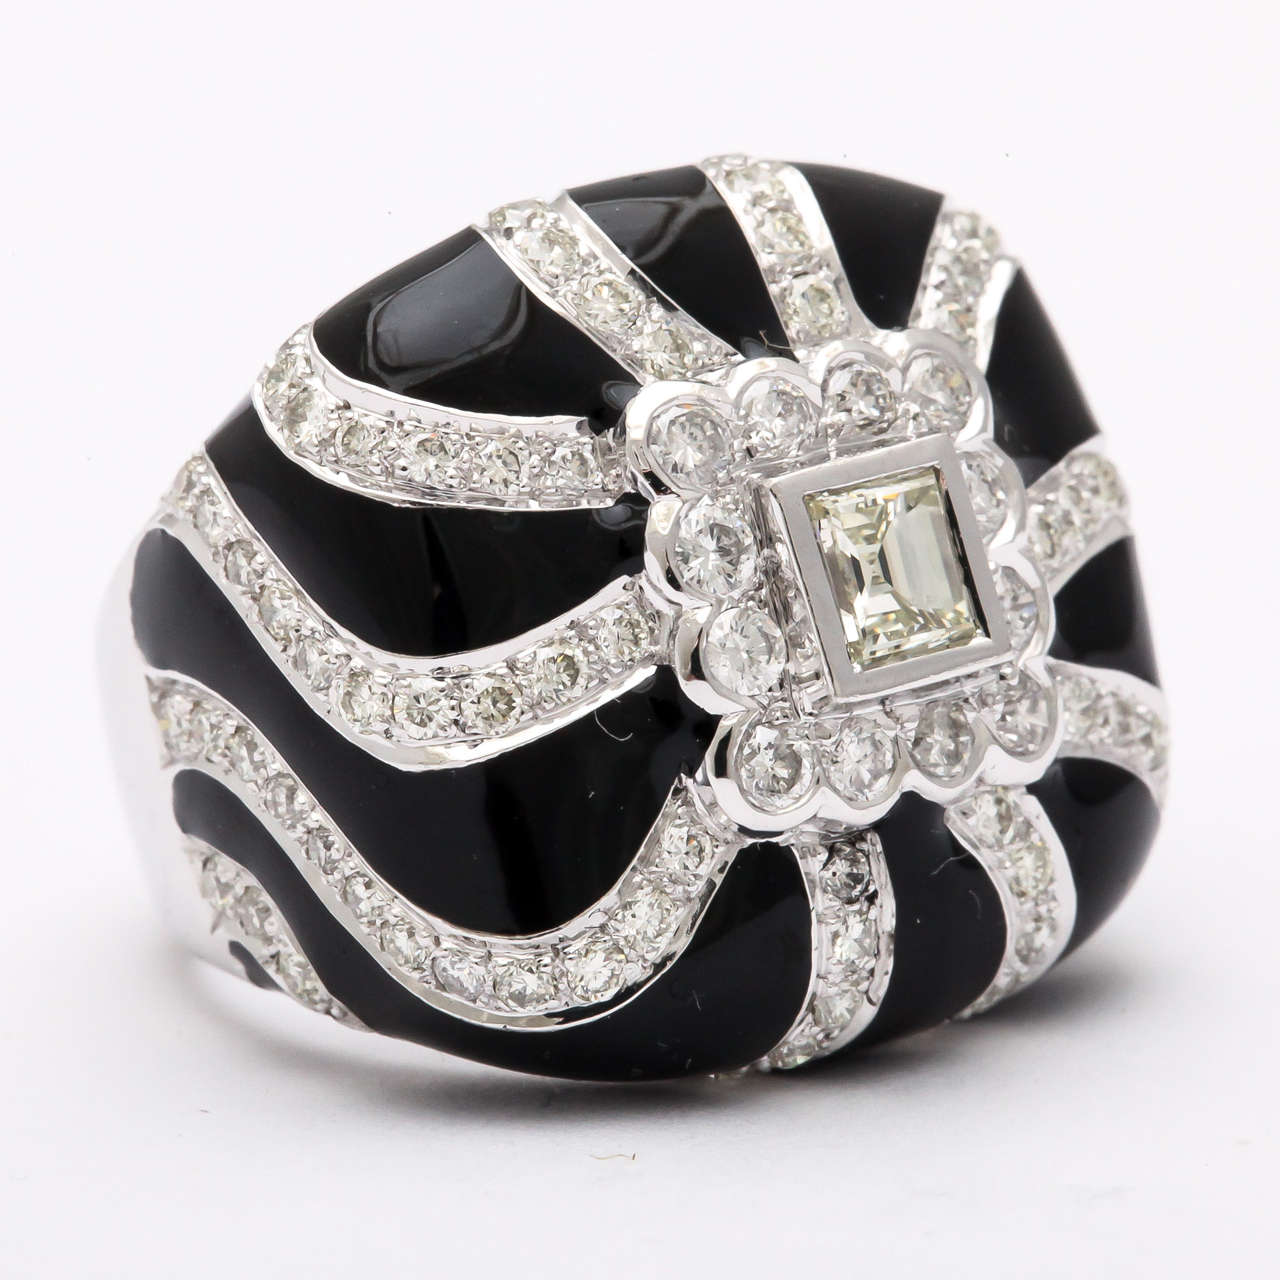 Stilvoller Ring aus schwarzer Emaille und mit Diamanten besetzt.  Erinnert an eine frühere Ära mit einem Update.